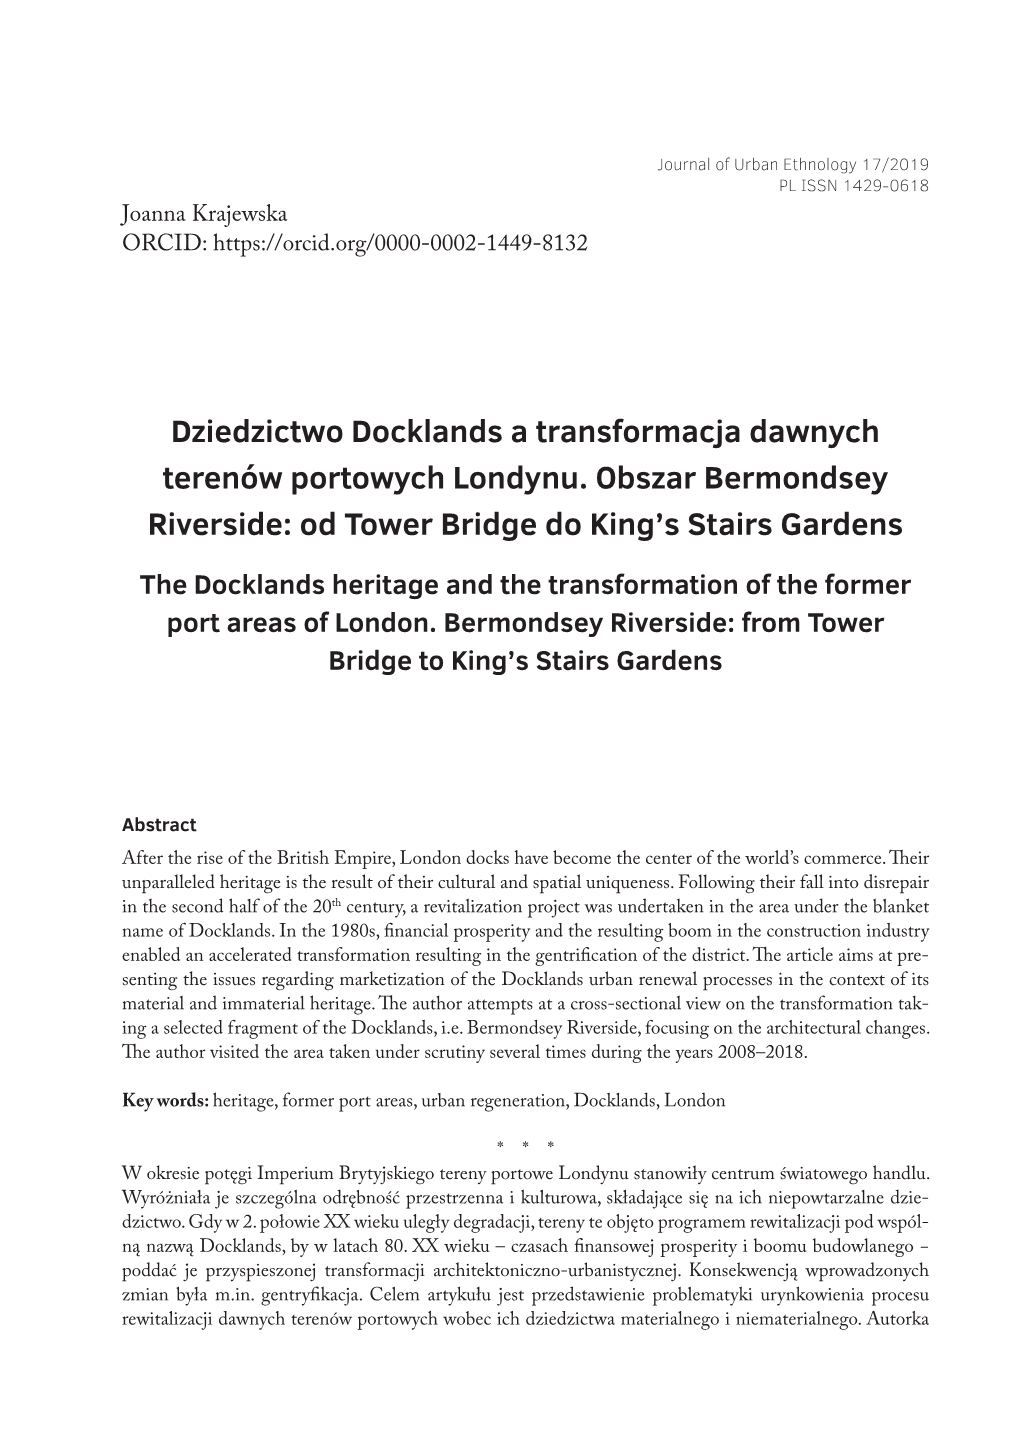 Dziedzictwo Docklands a Transformacja Dawnych Terenów Portowych Londynu